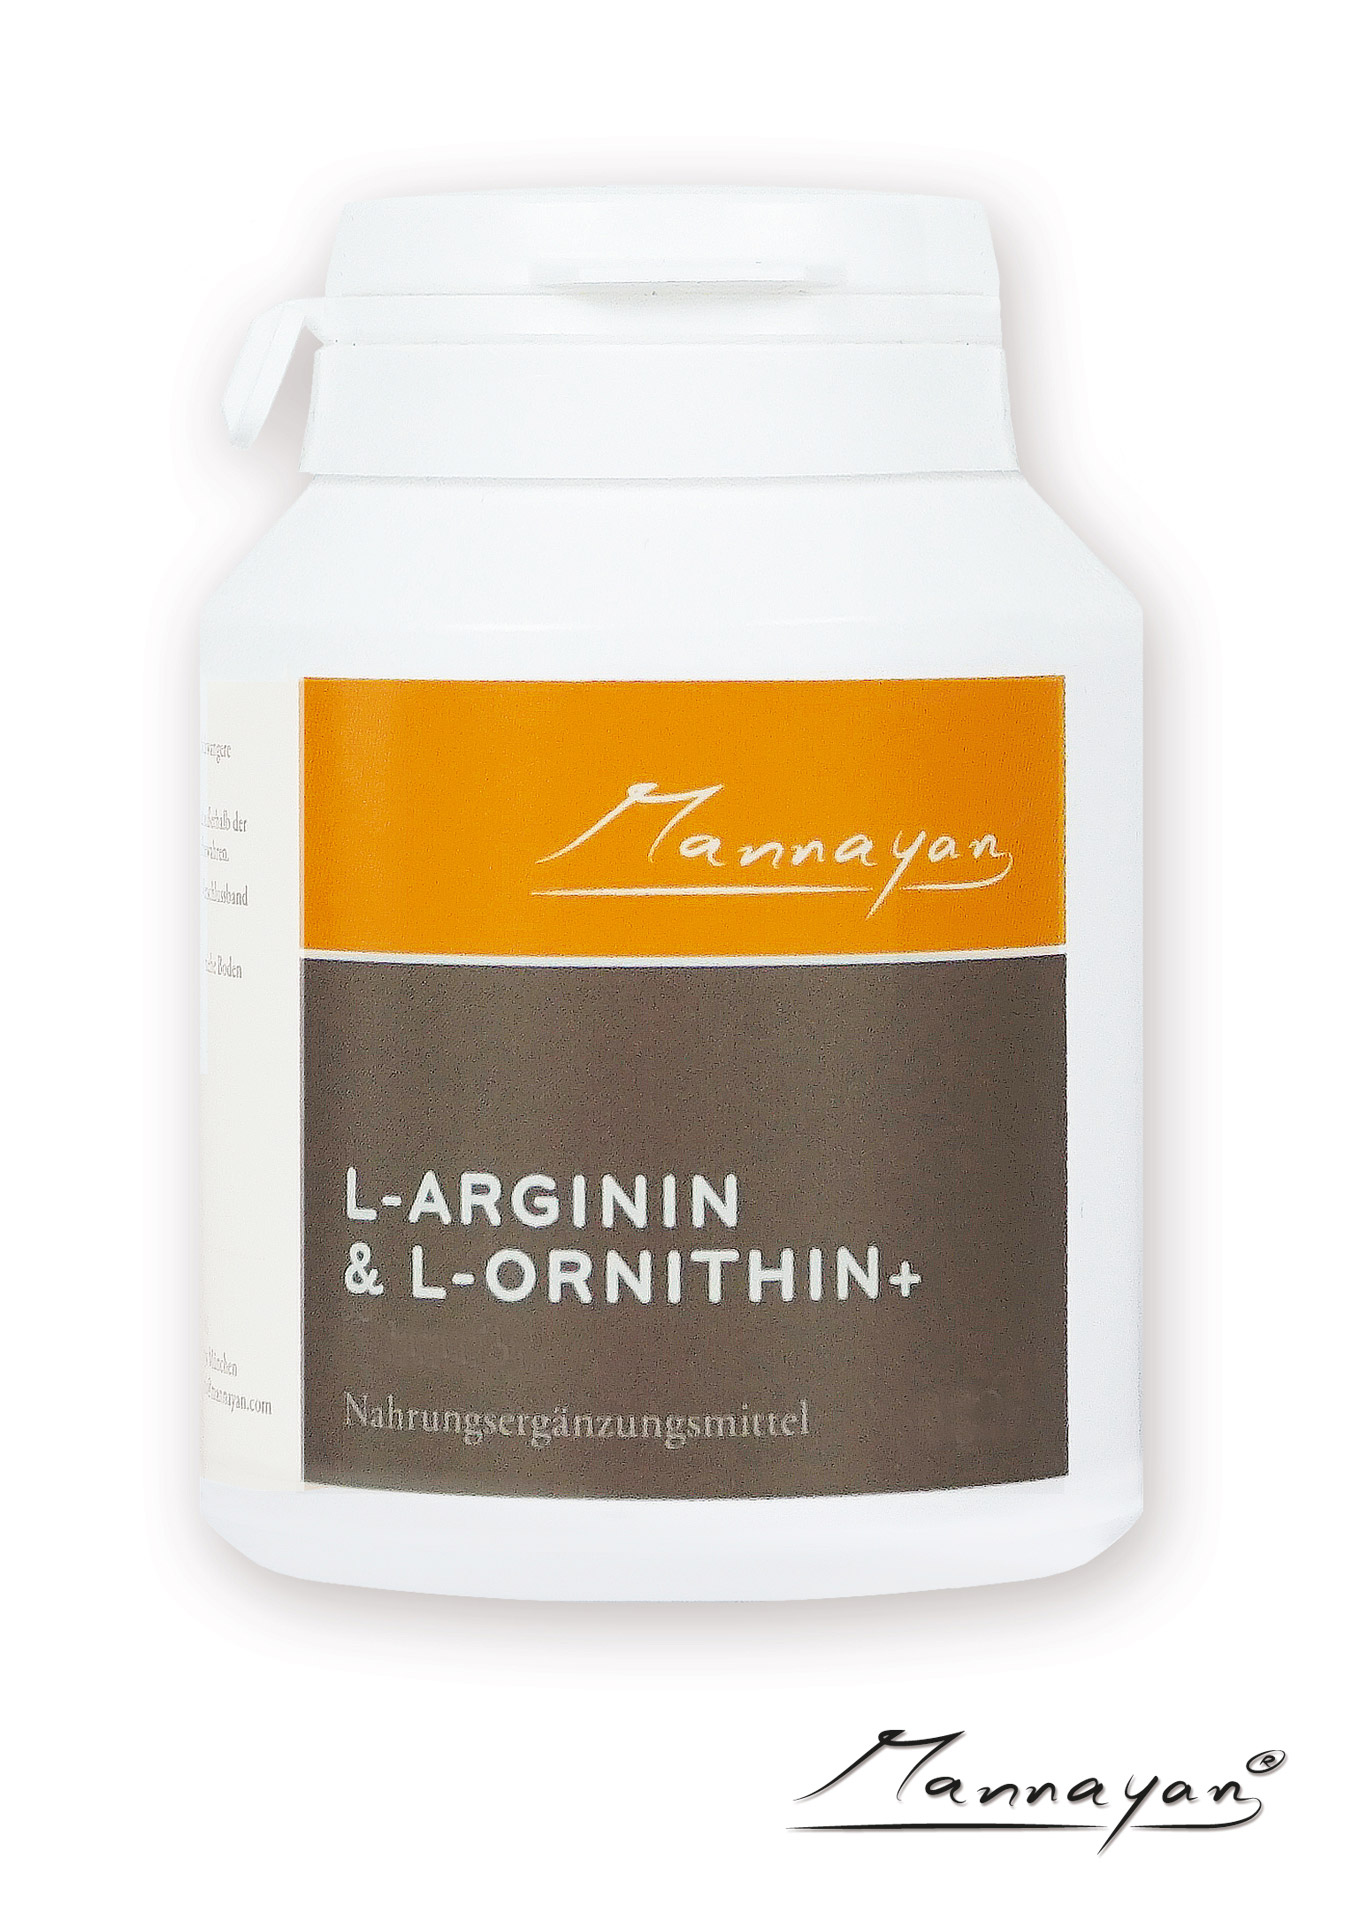 L-Arginin-L-Ornithin+ von Mannayan